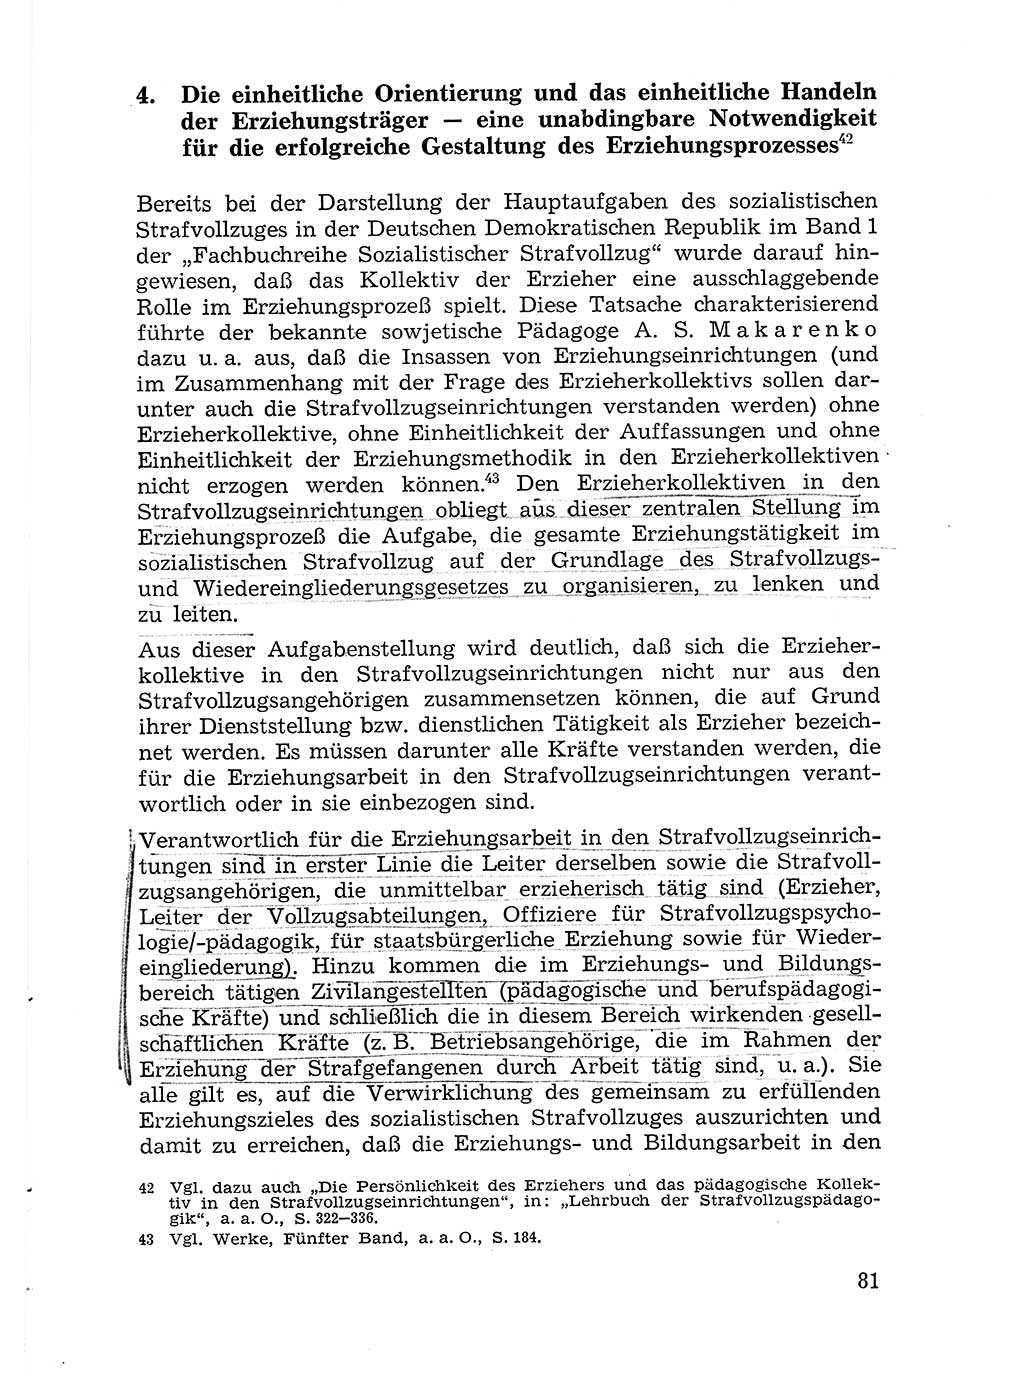 Sozialistischer Strafvollzug (SV) [Deutsche Demokratische Republik (DDR)] 1972, Seite 81 (Soz. SV DDR 1972, S. 81)